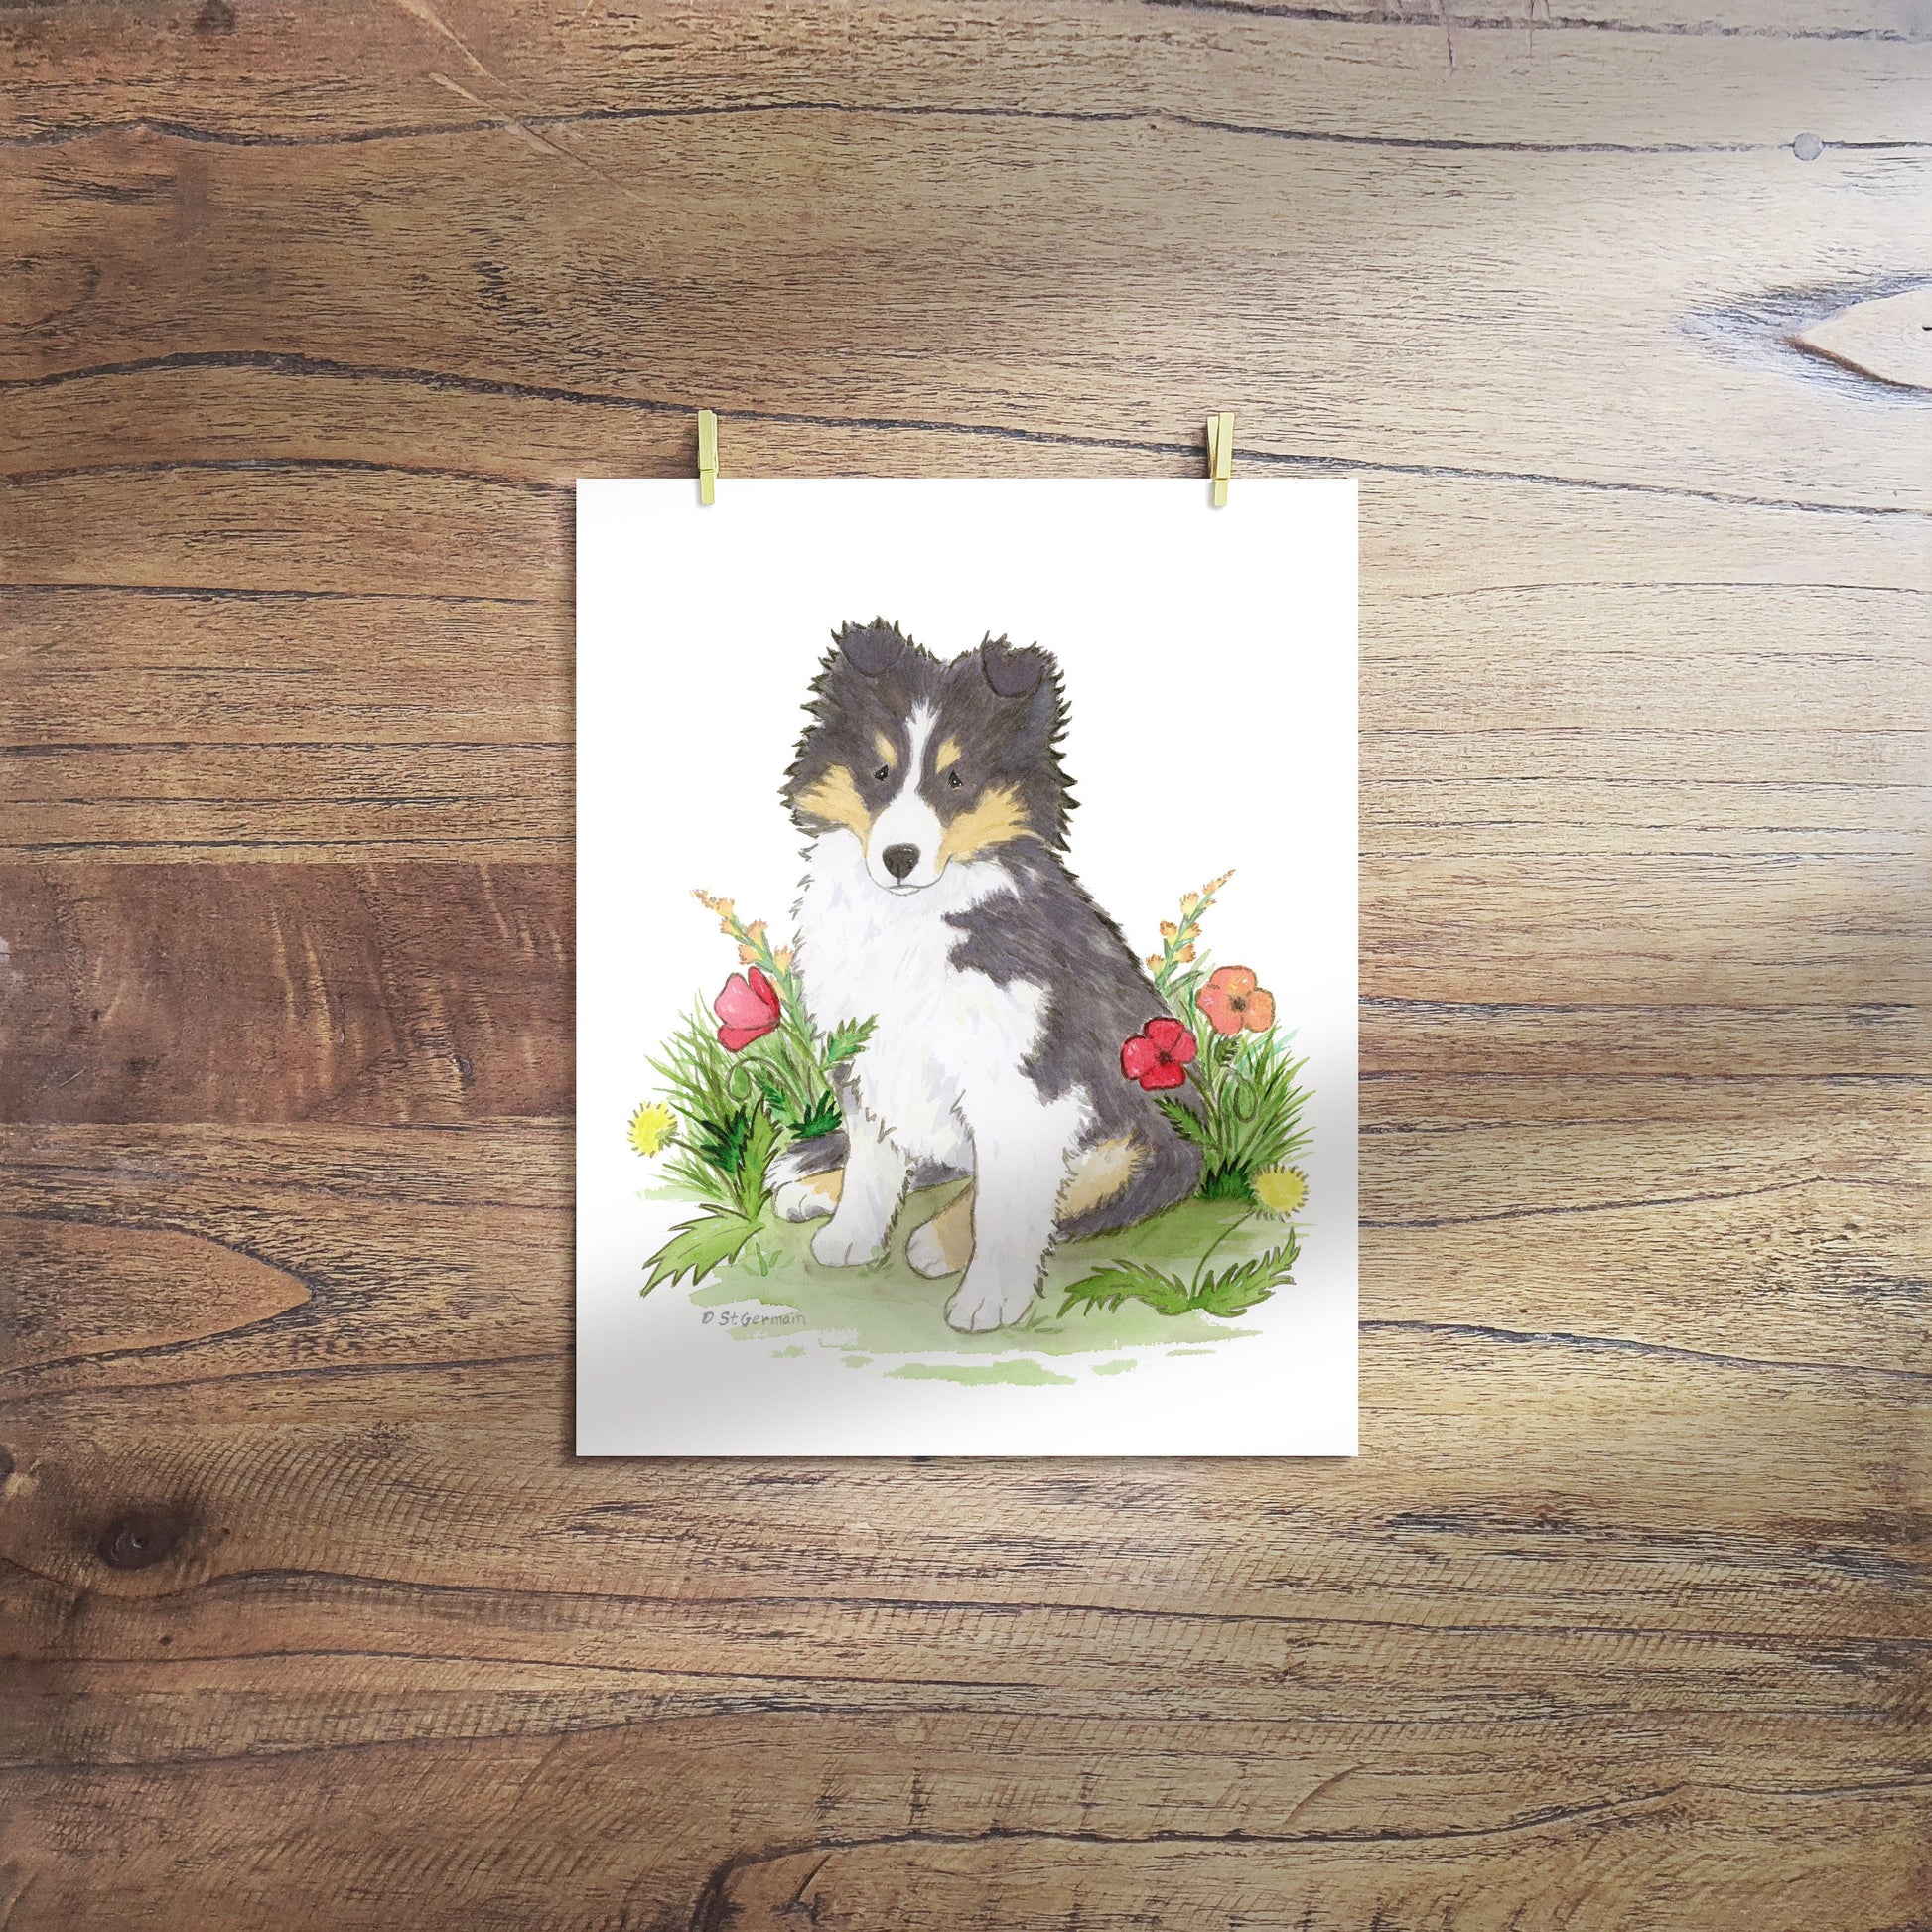 Sheltie Art, Shetland Sheepdog, Tricolor Sheltie Puppy with Flowers, Cute Sheltie Art, Nursery Art, Sheltie Gift, Sheltie Lovers, Cute Dog